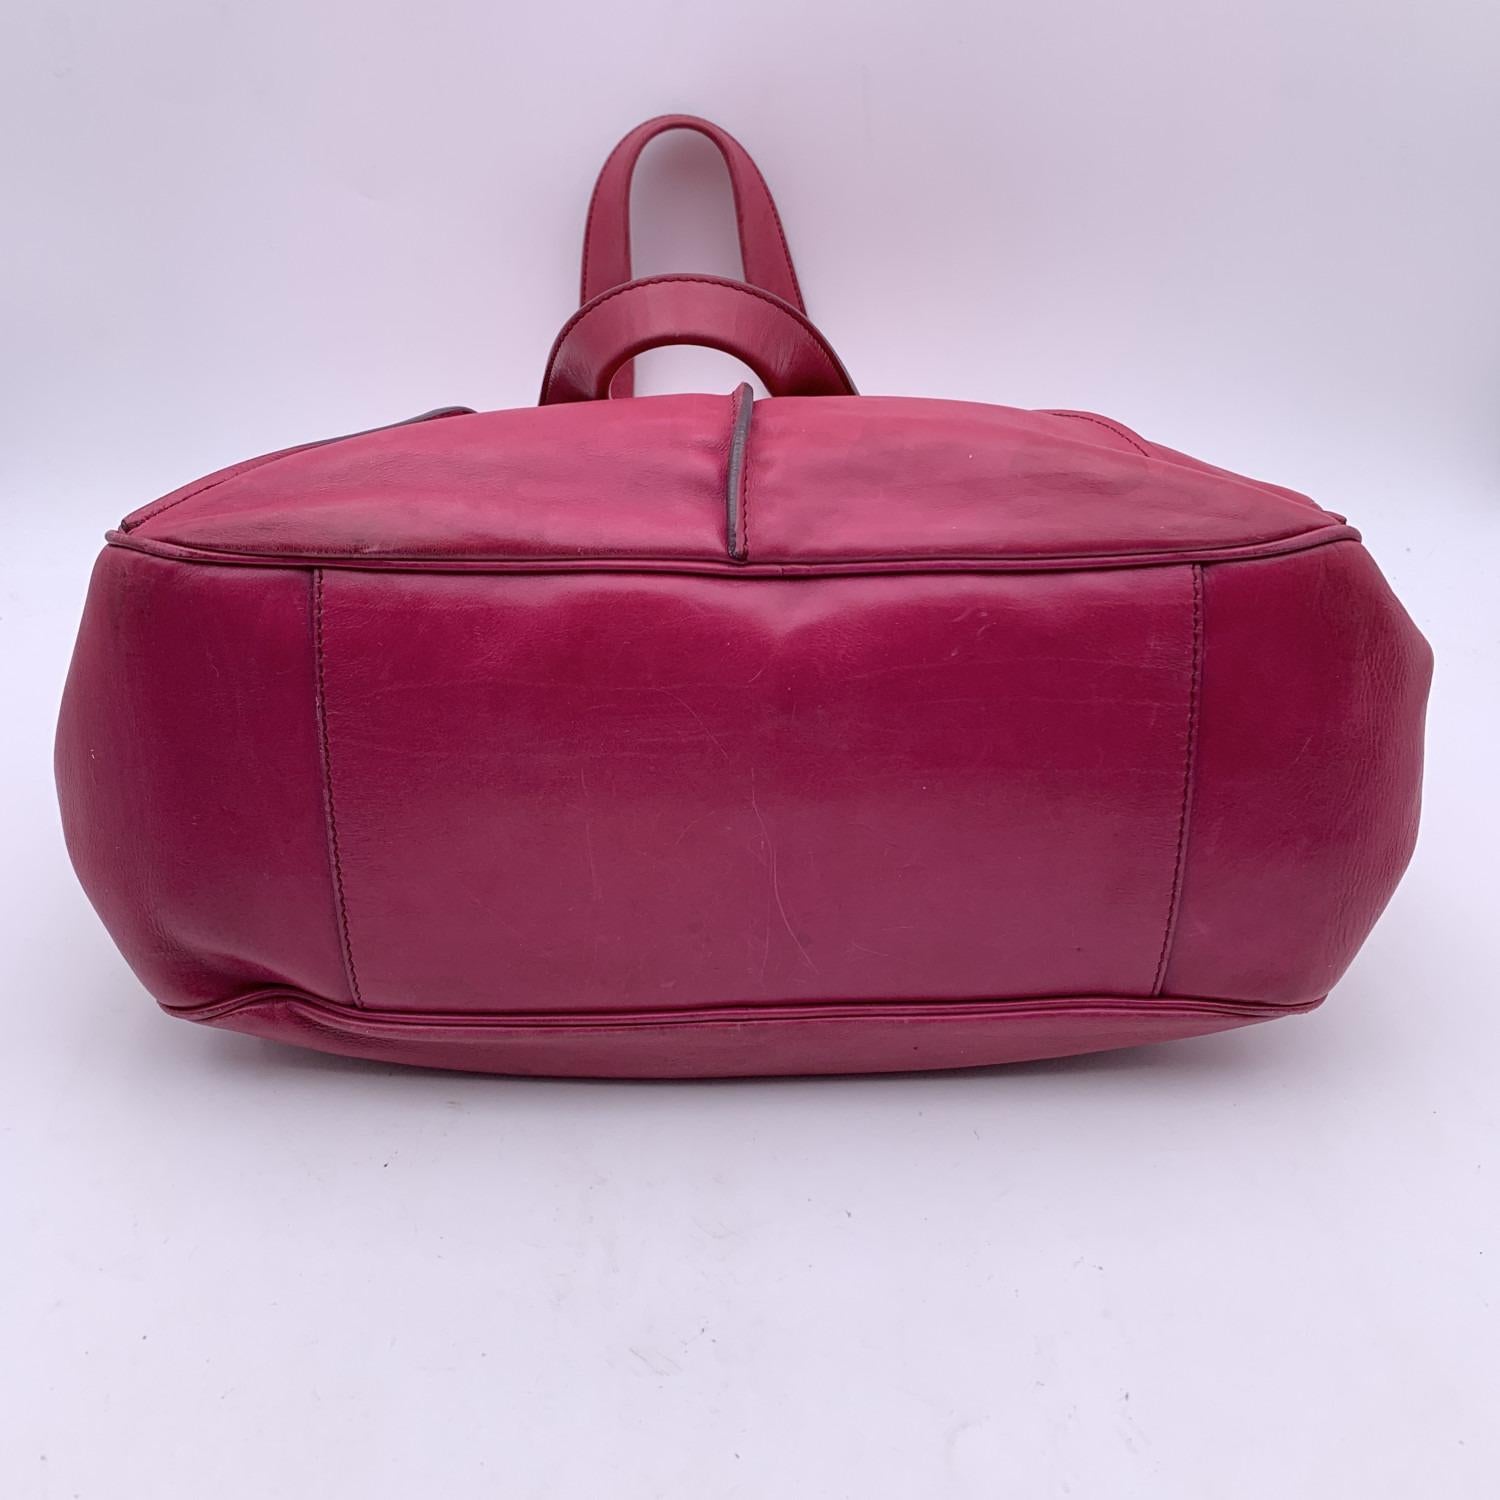 Celine - Sac fourre-tout porté épaule en cuir rose et violet avec sphères 4